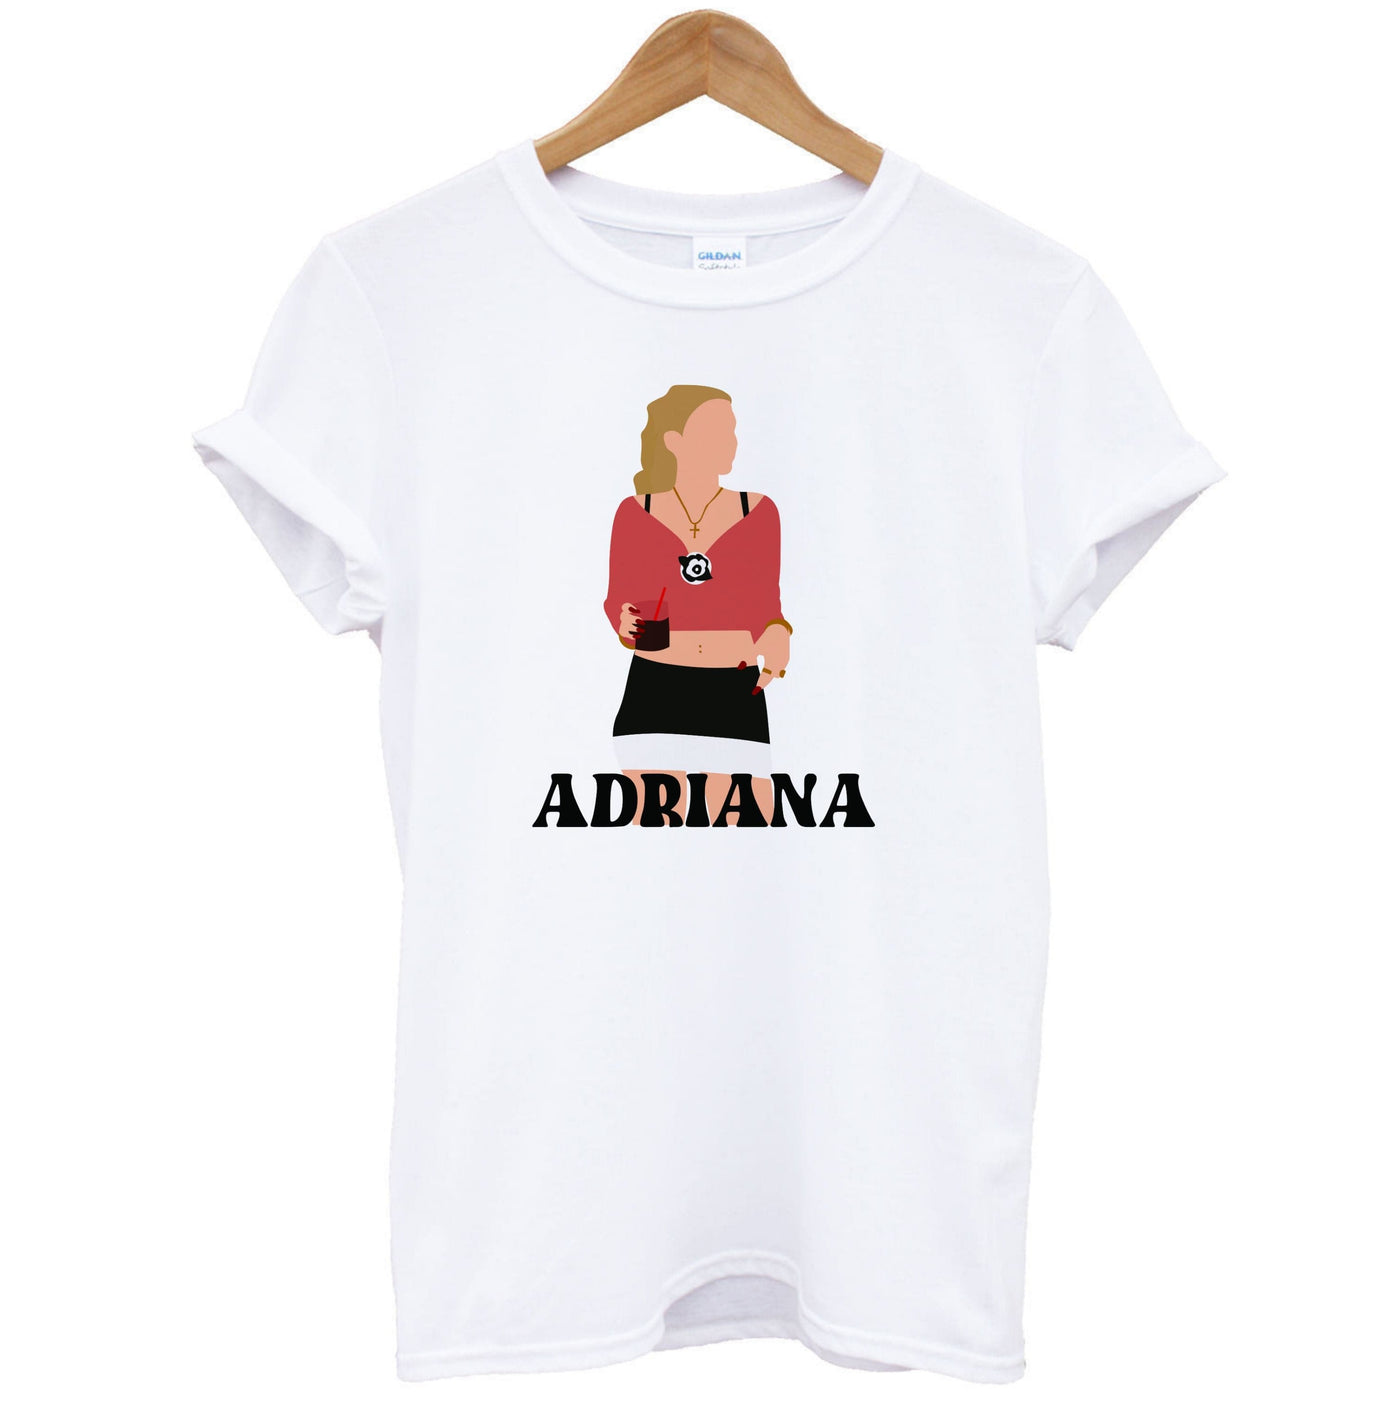 Adriana - The Sopranos T-Shirt